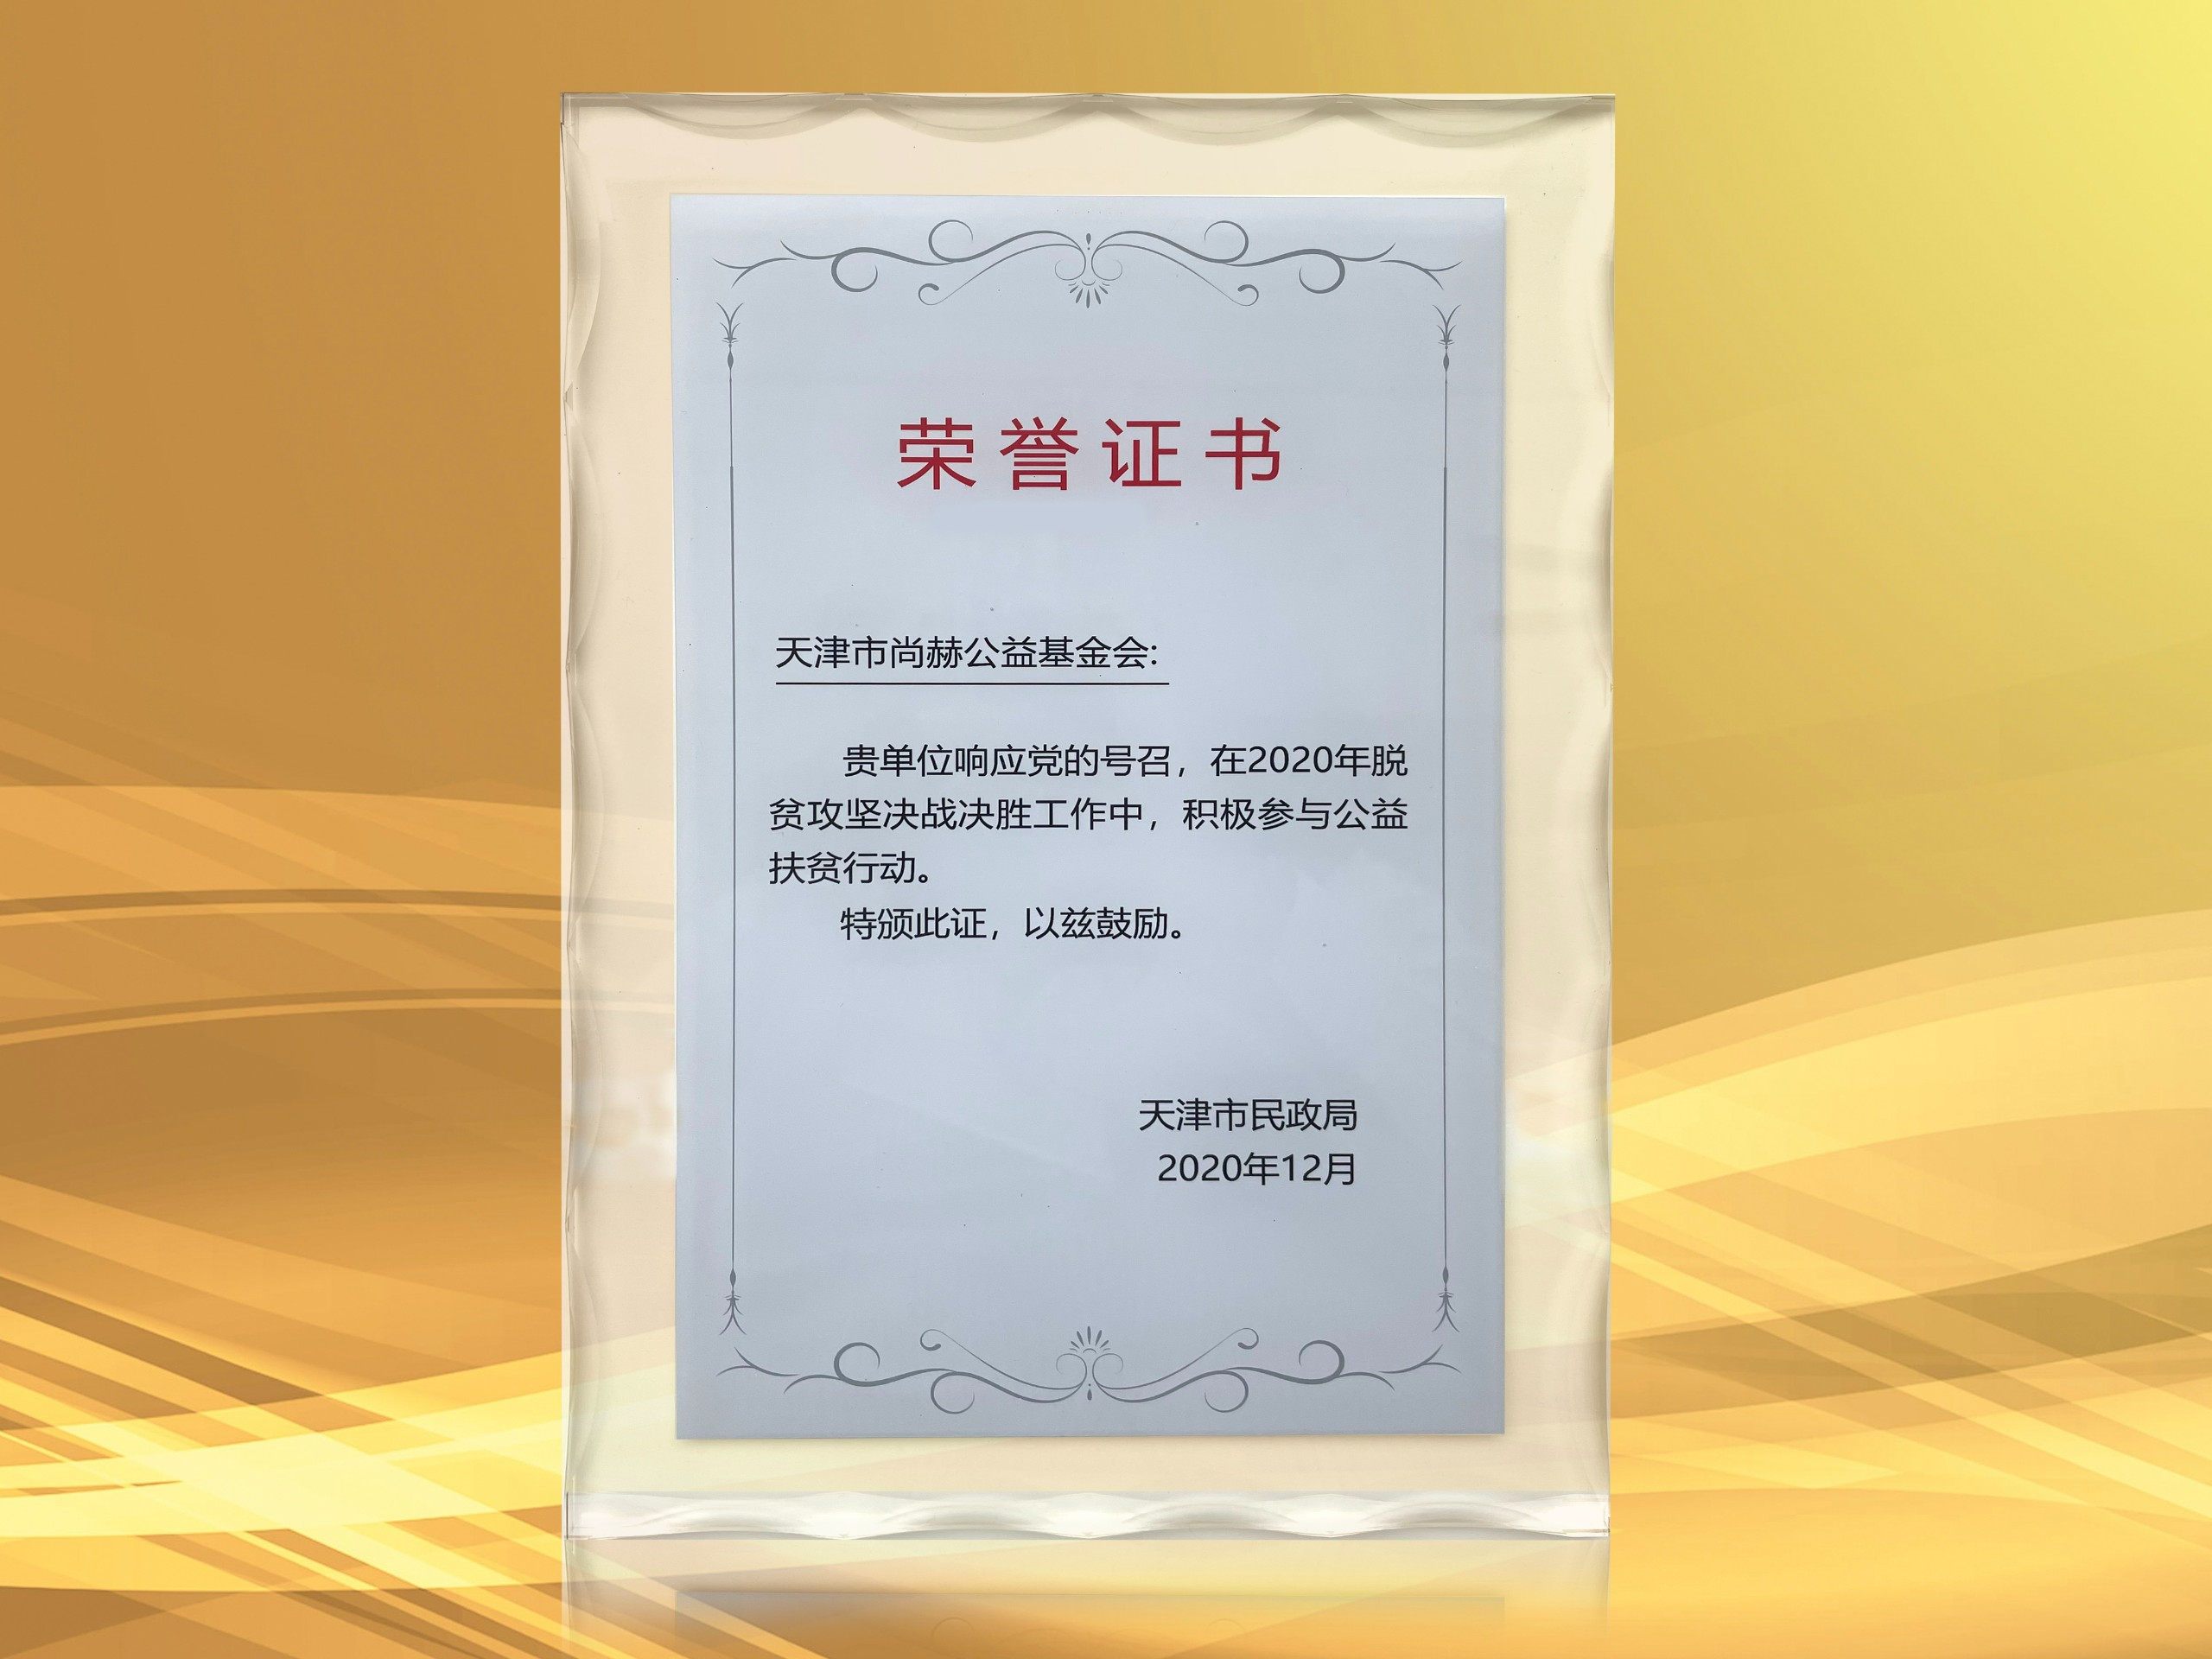 2021年3月-立博登录（中国）有限公司官网公益基金会获得天津市民政局颁发的荣誉证书